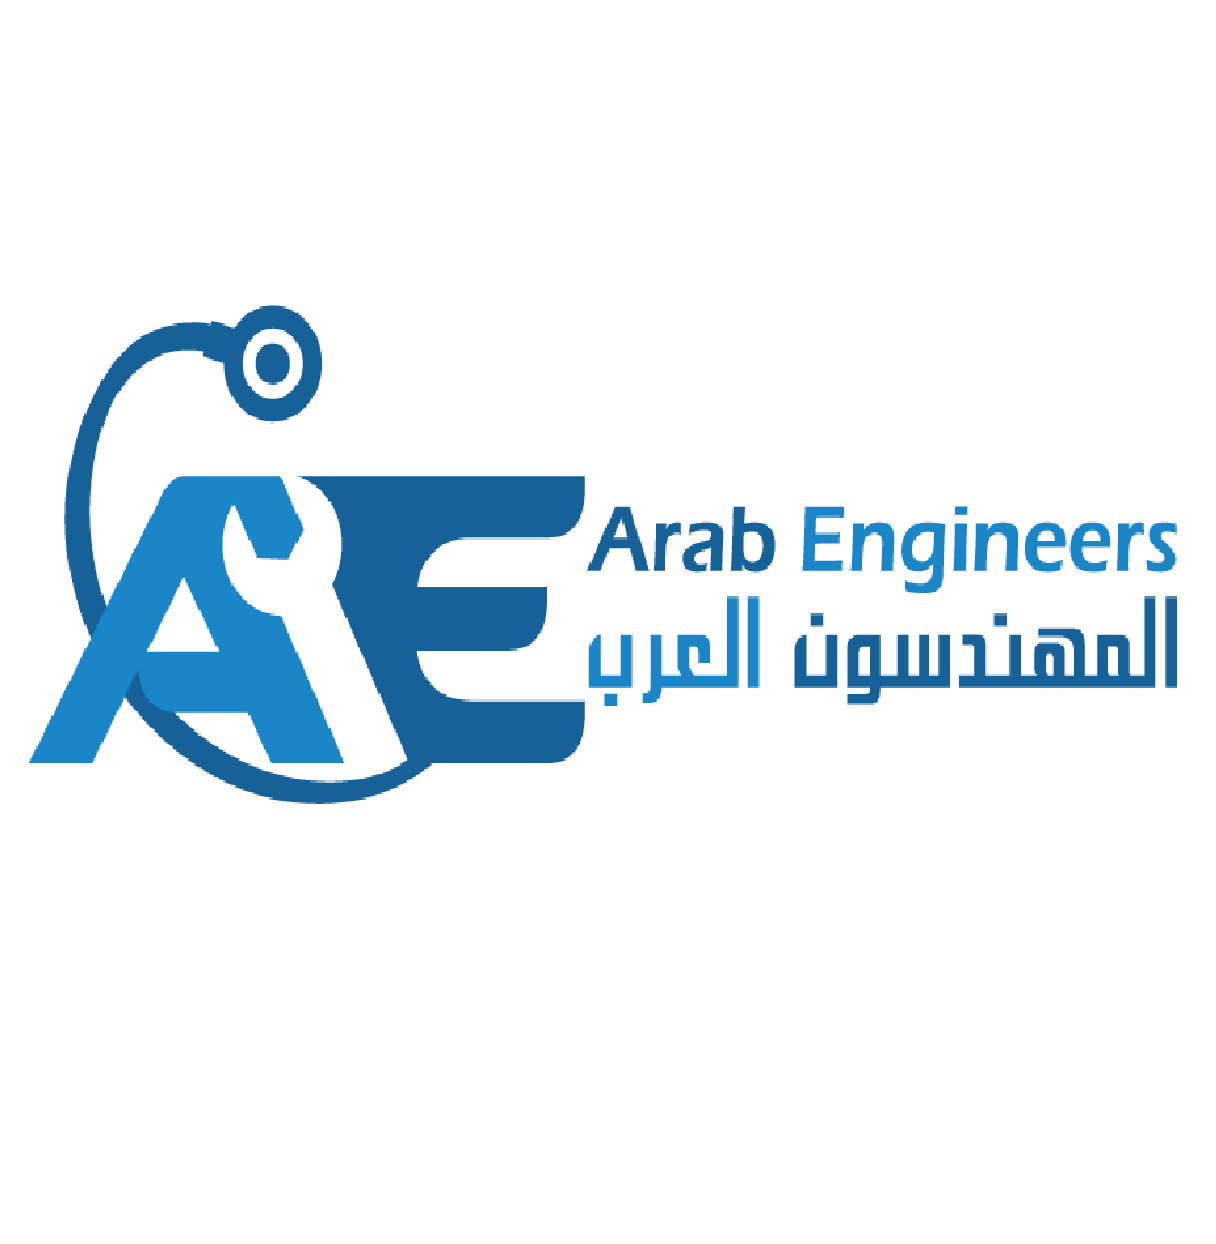 Arab Engineers